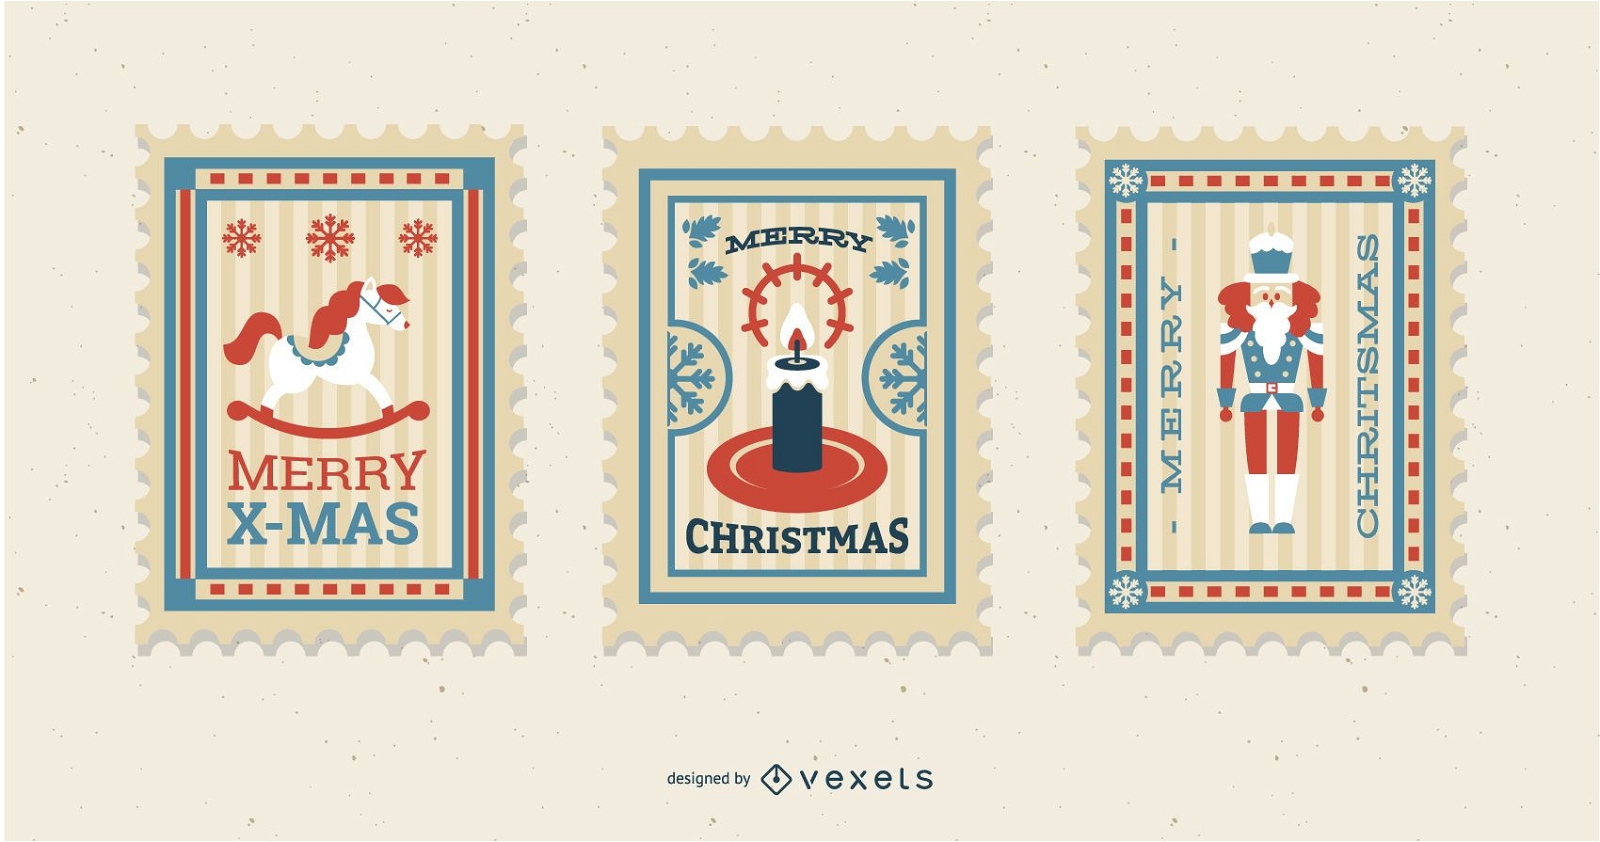 Christmas Postage Stamp Design Set Vector Download